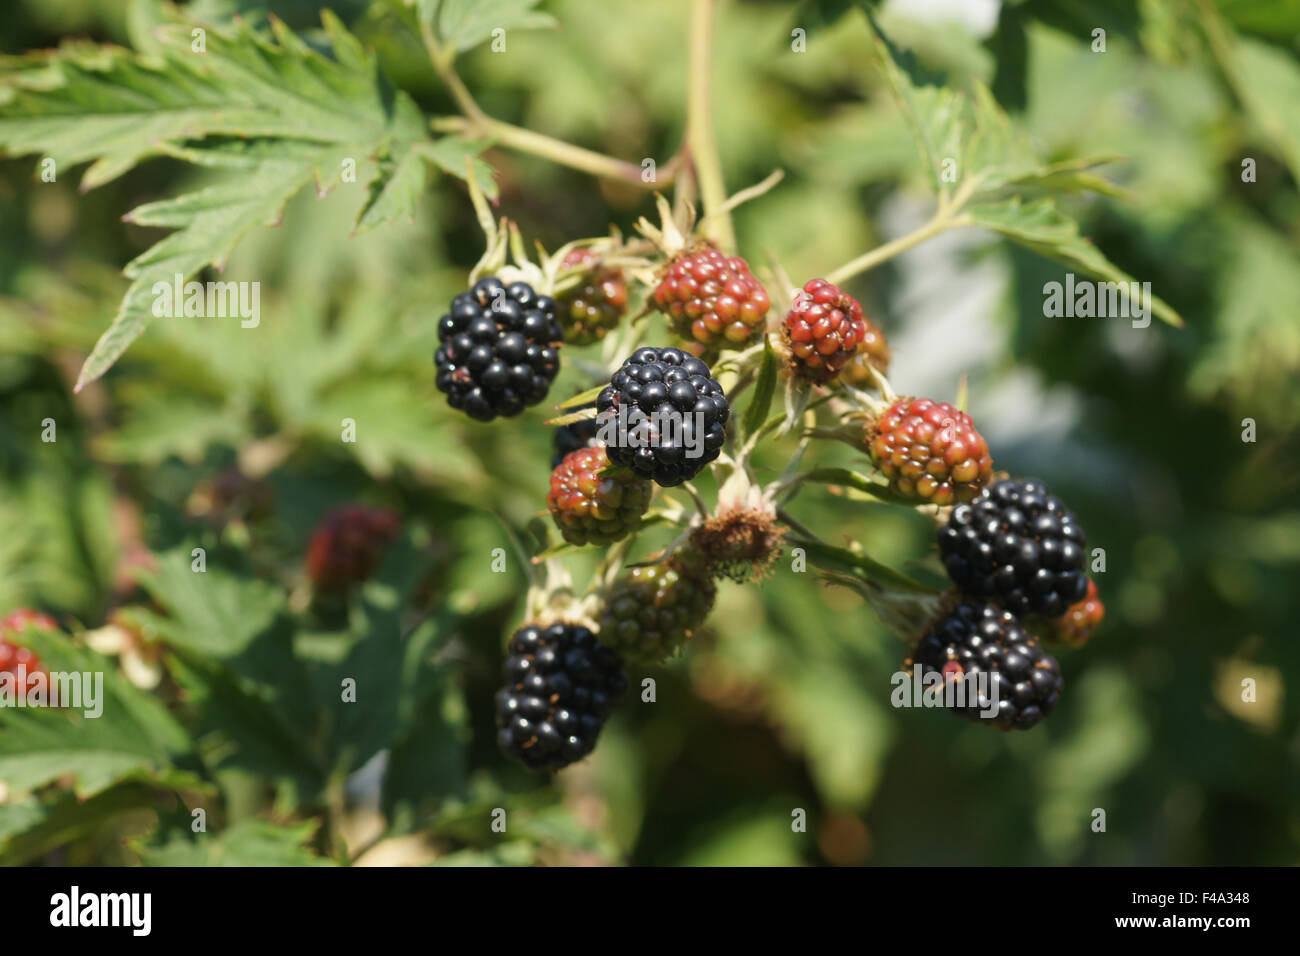 Blackberry Stock Photo